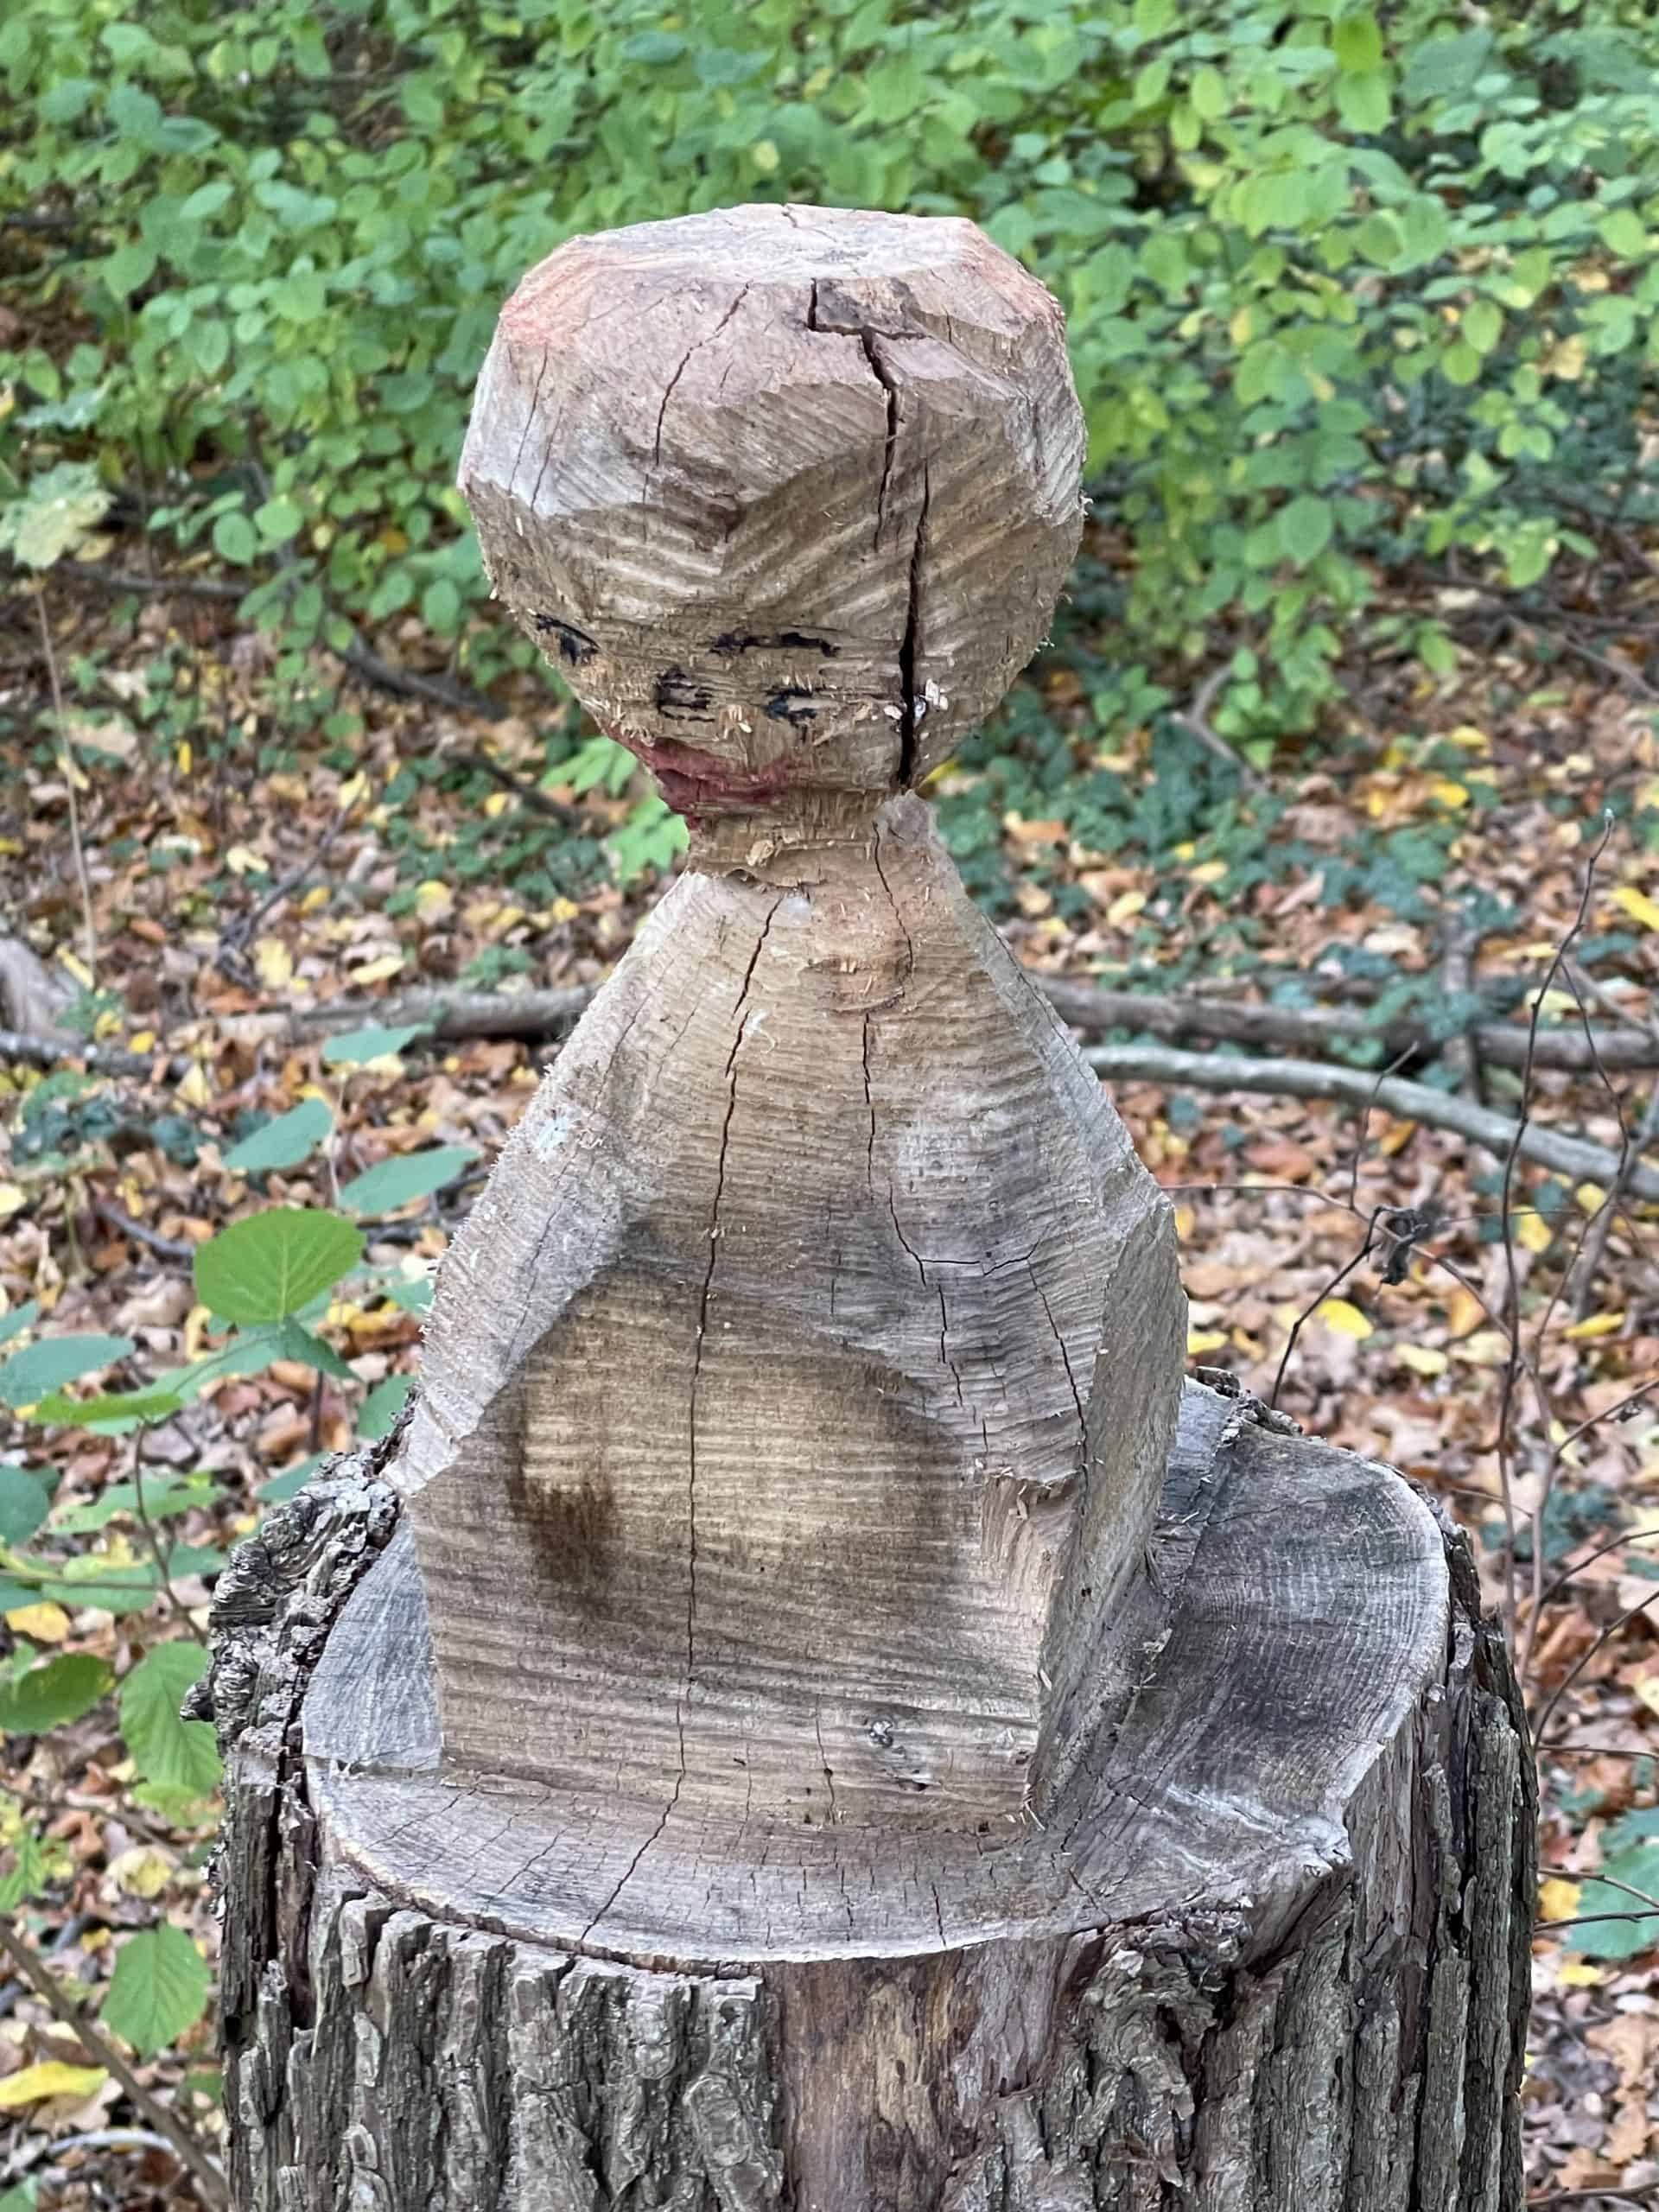 Holzfigur auf Baumstamm im Wald